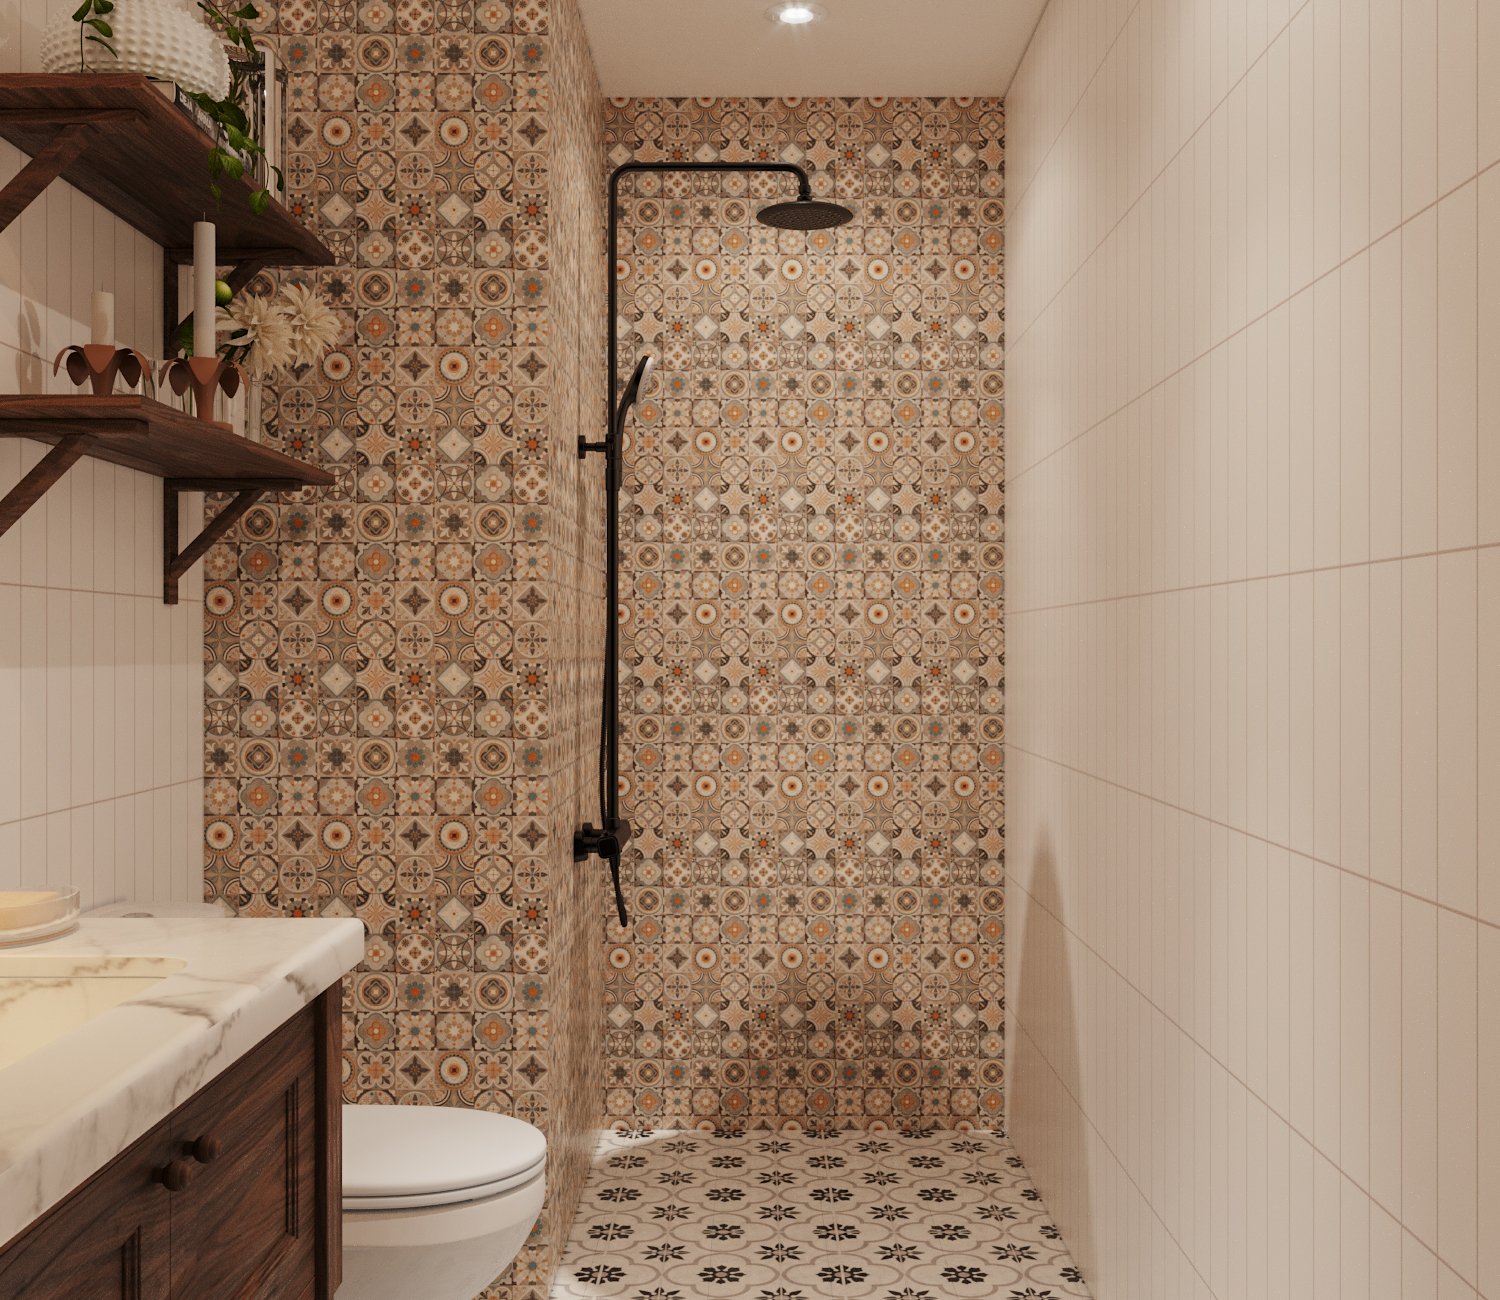 Các khu vực chức năng trong phòng tắm căn hộ 53m2 được phân tách tương đối bởi màu sắc, họa tiết của gạc ốp tường.